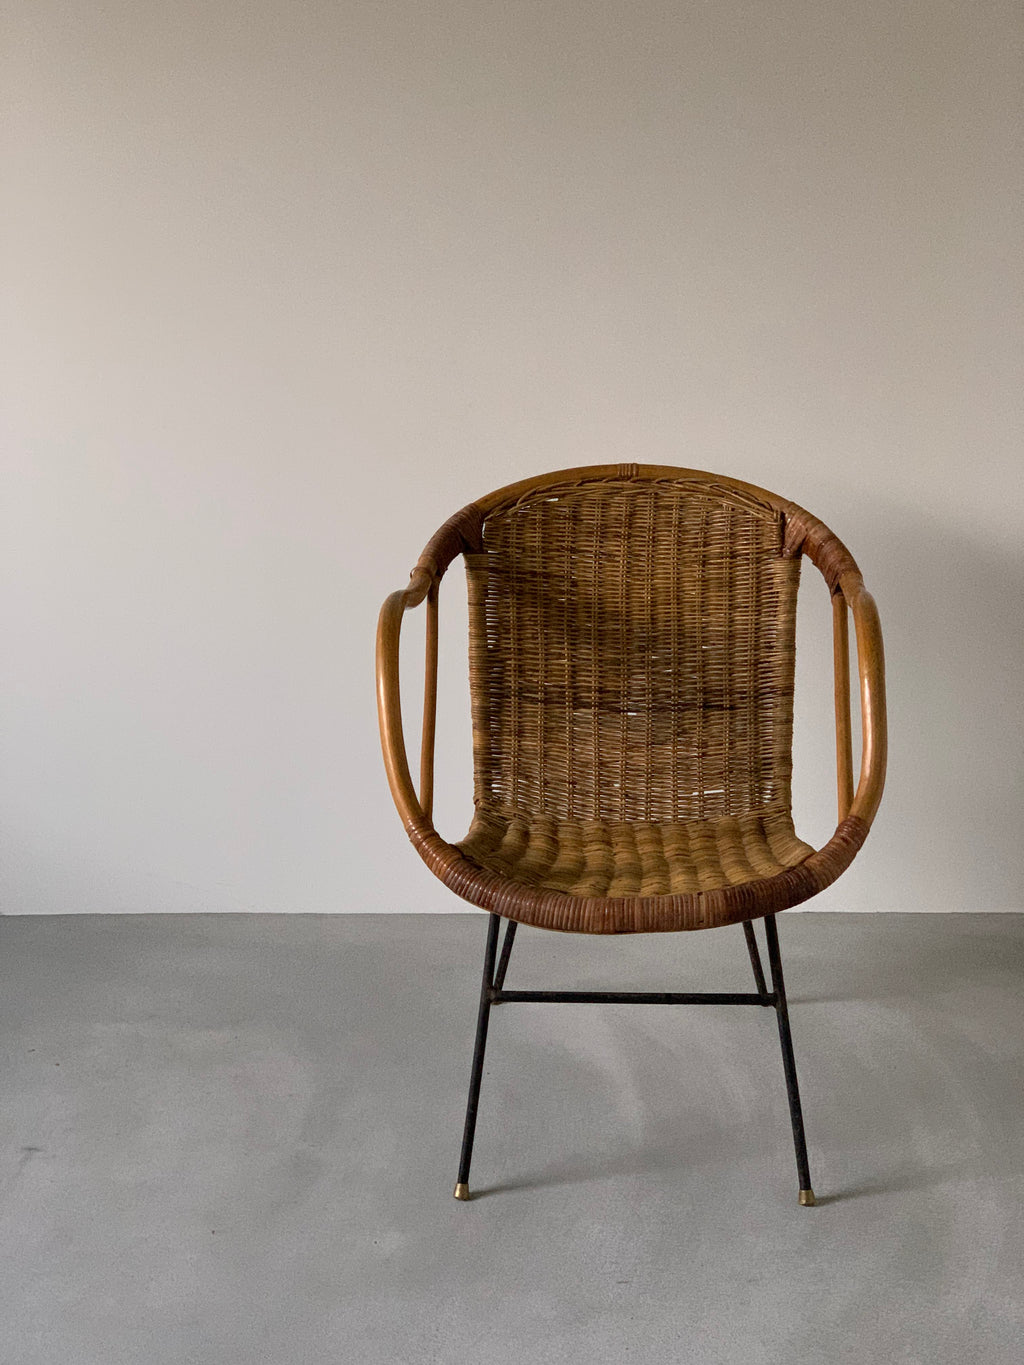 ラタンチェア / rattan chair #0041